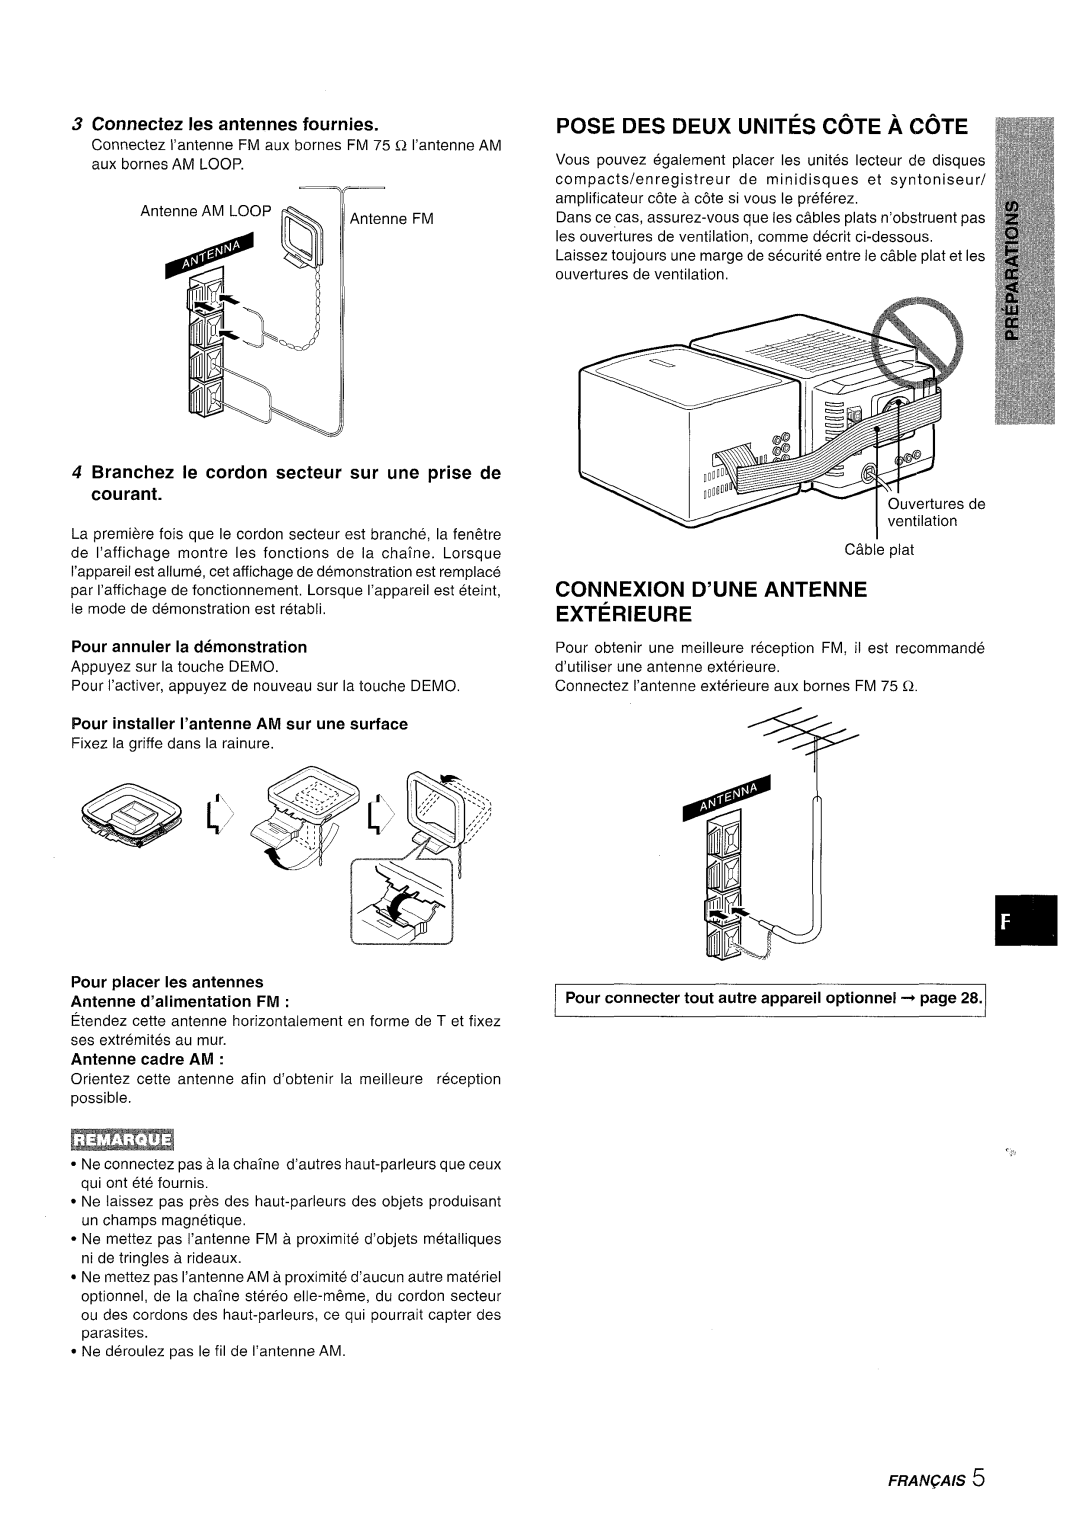 Aiwa XR-MD95 manual Pose Des Deux Unites Cote A Cote, Connexion D’Une Antenne Exterieure, Connectez Ies antennes fournies 